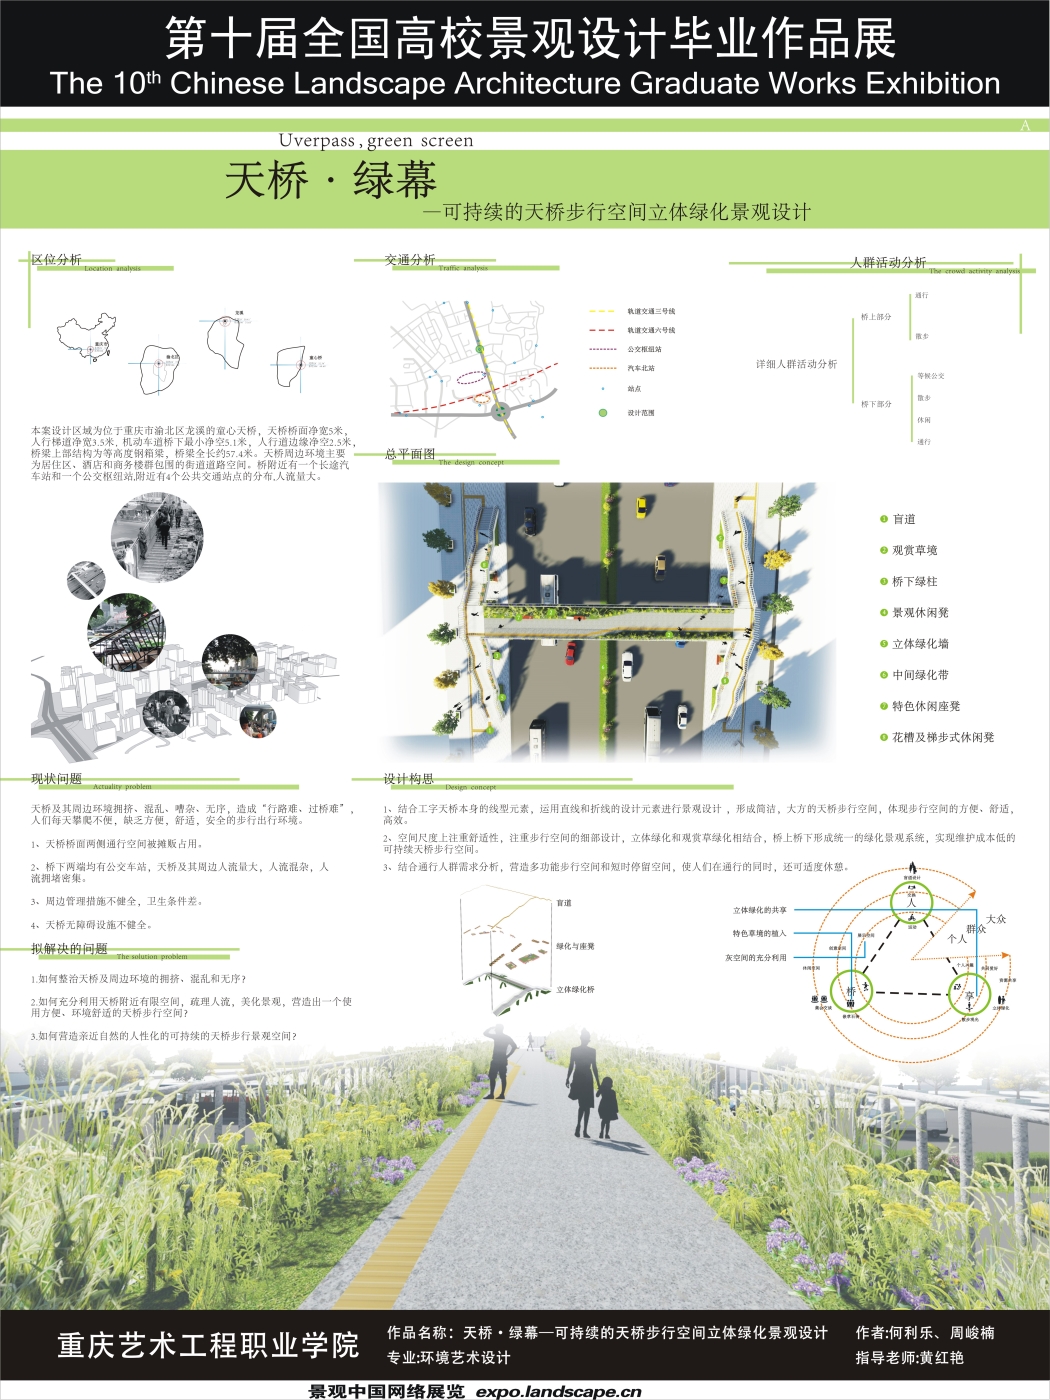 天桥·绿幕——可持续的天桥步行空间立体绿化景观设计-1